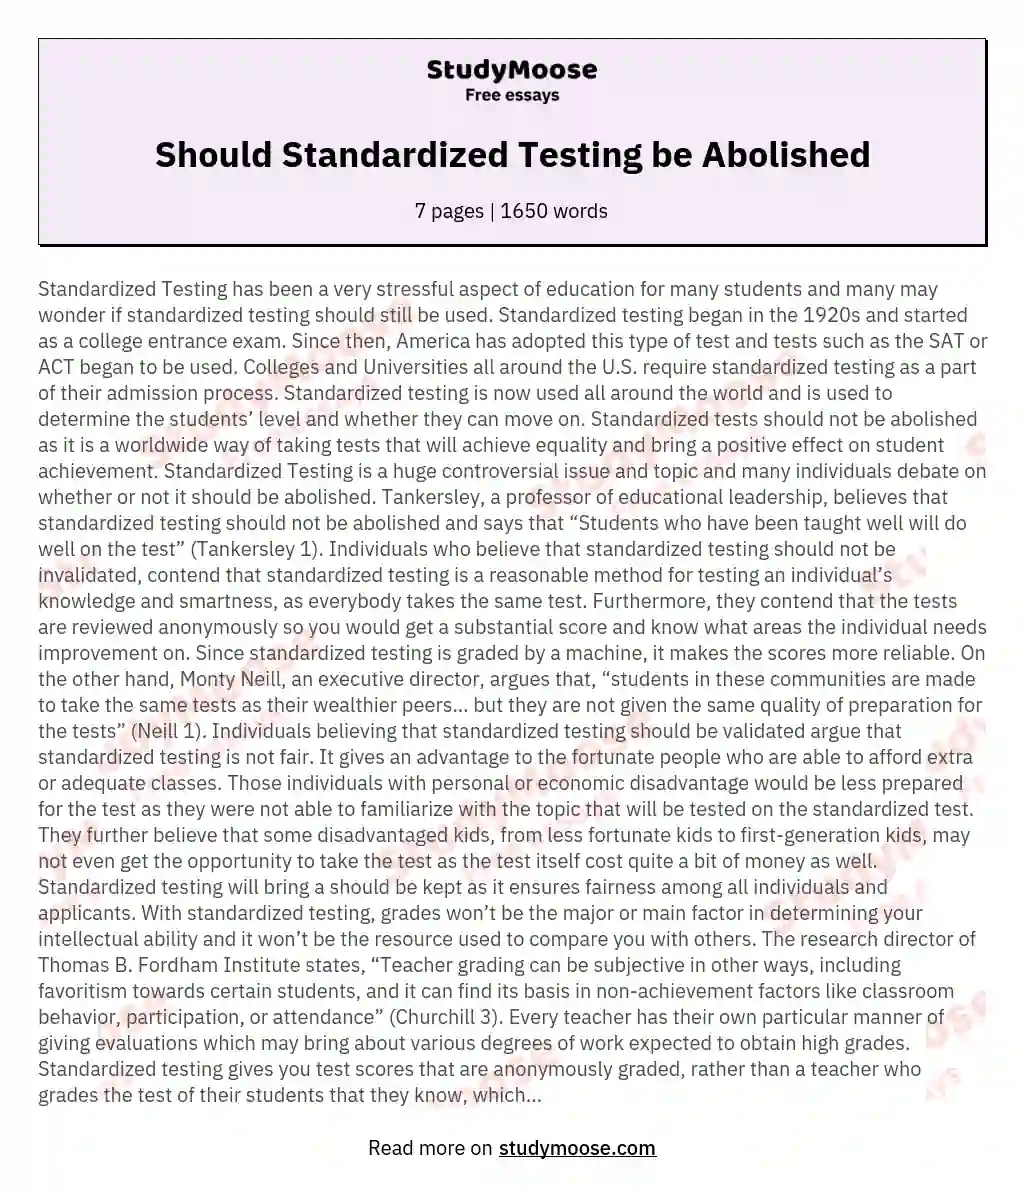 Should Standardized Testing be Abolished